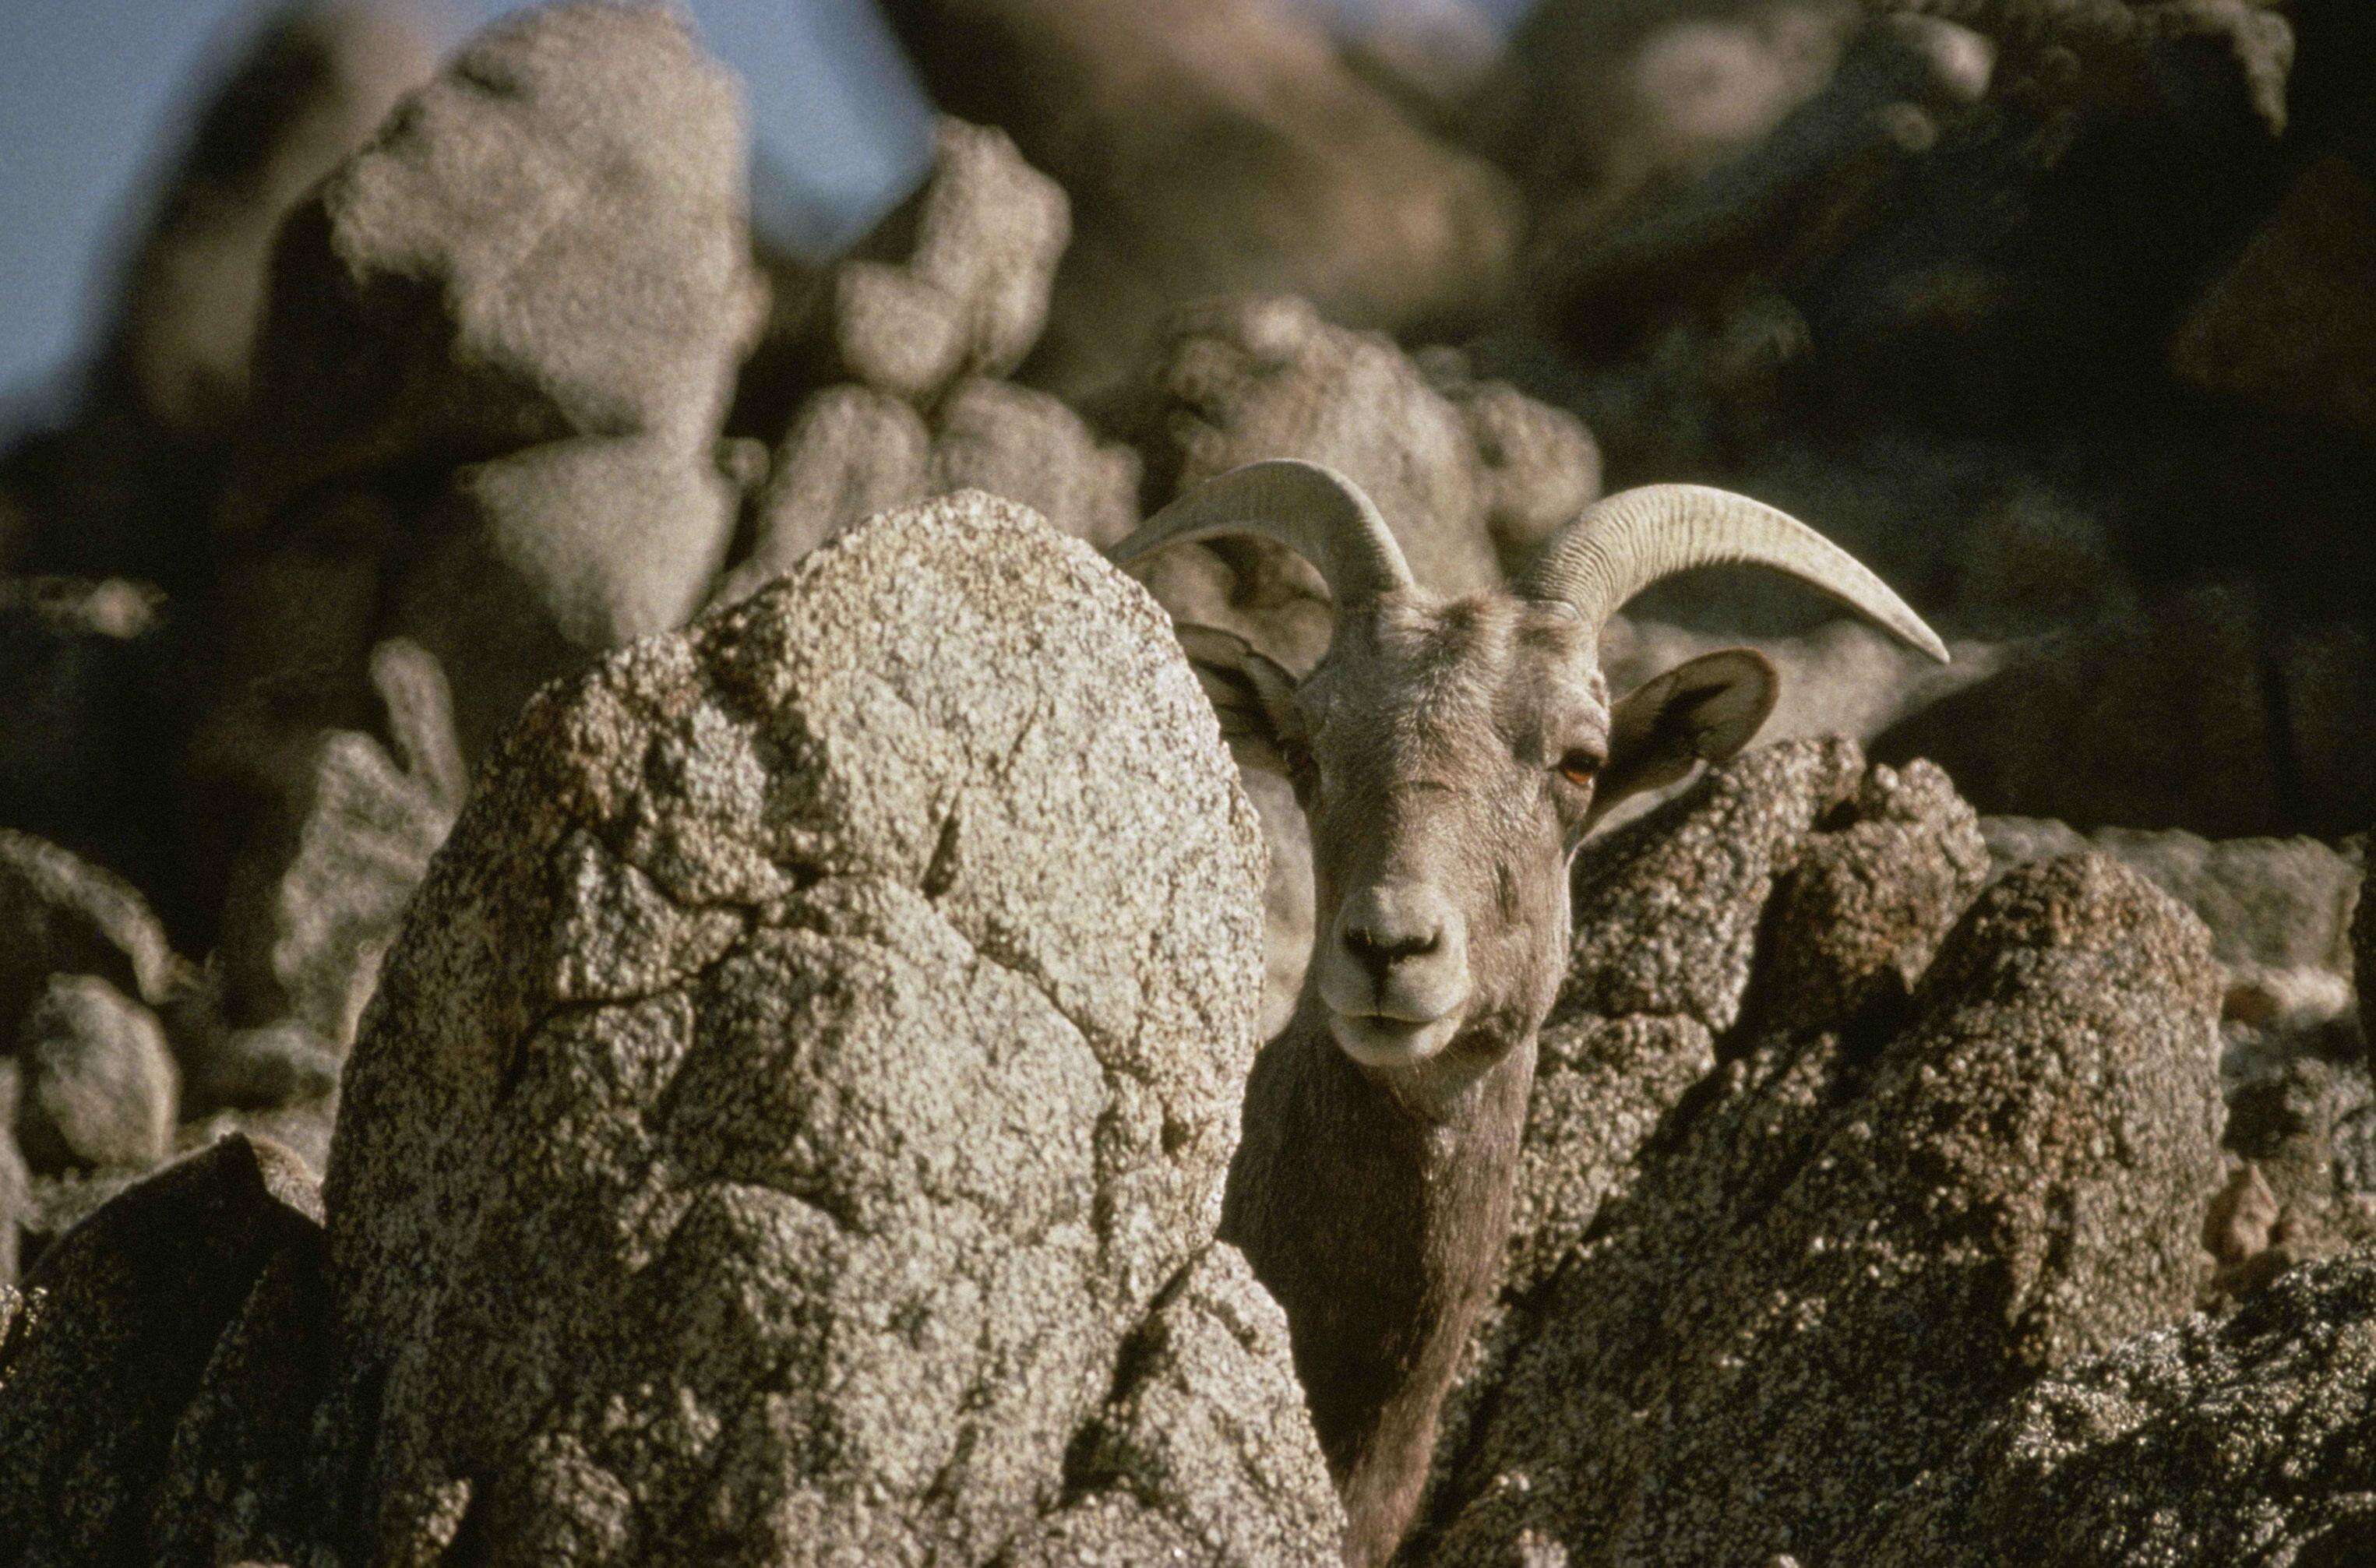 Image of Desert bighorn sheep